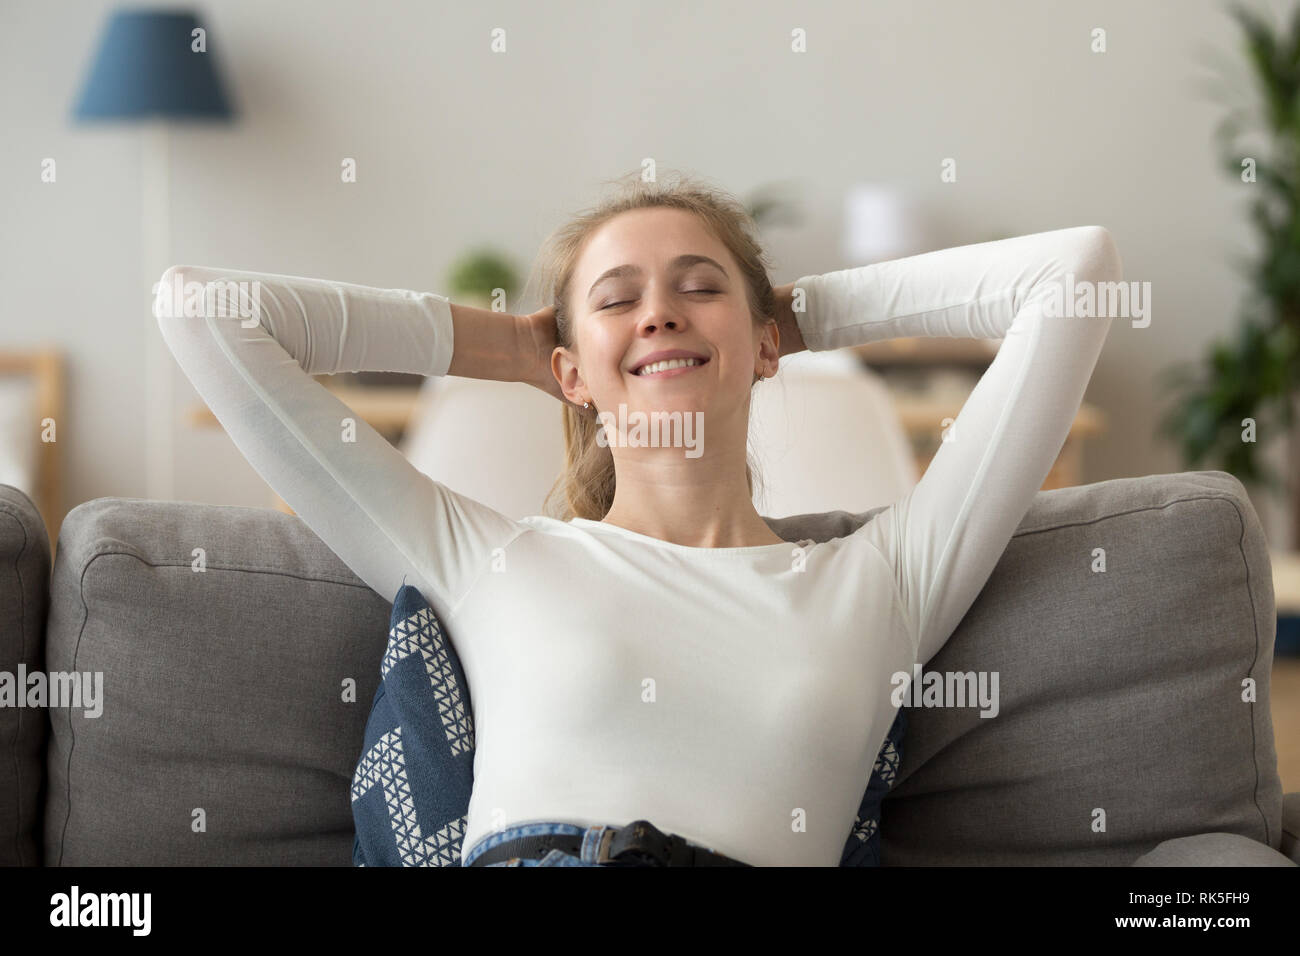 Rilassata donna felice in appoggio su un confortevole divano respirando aria fresca Foto Stock